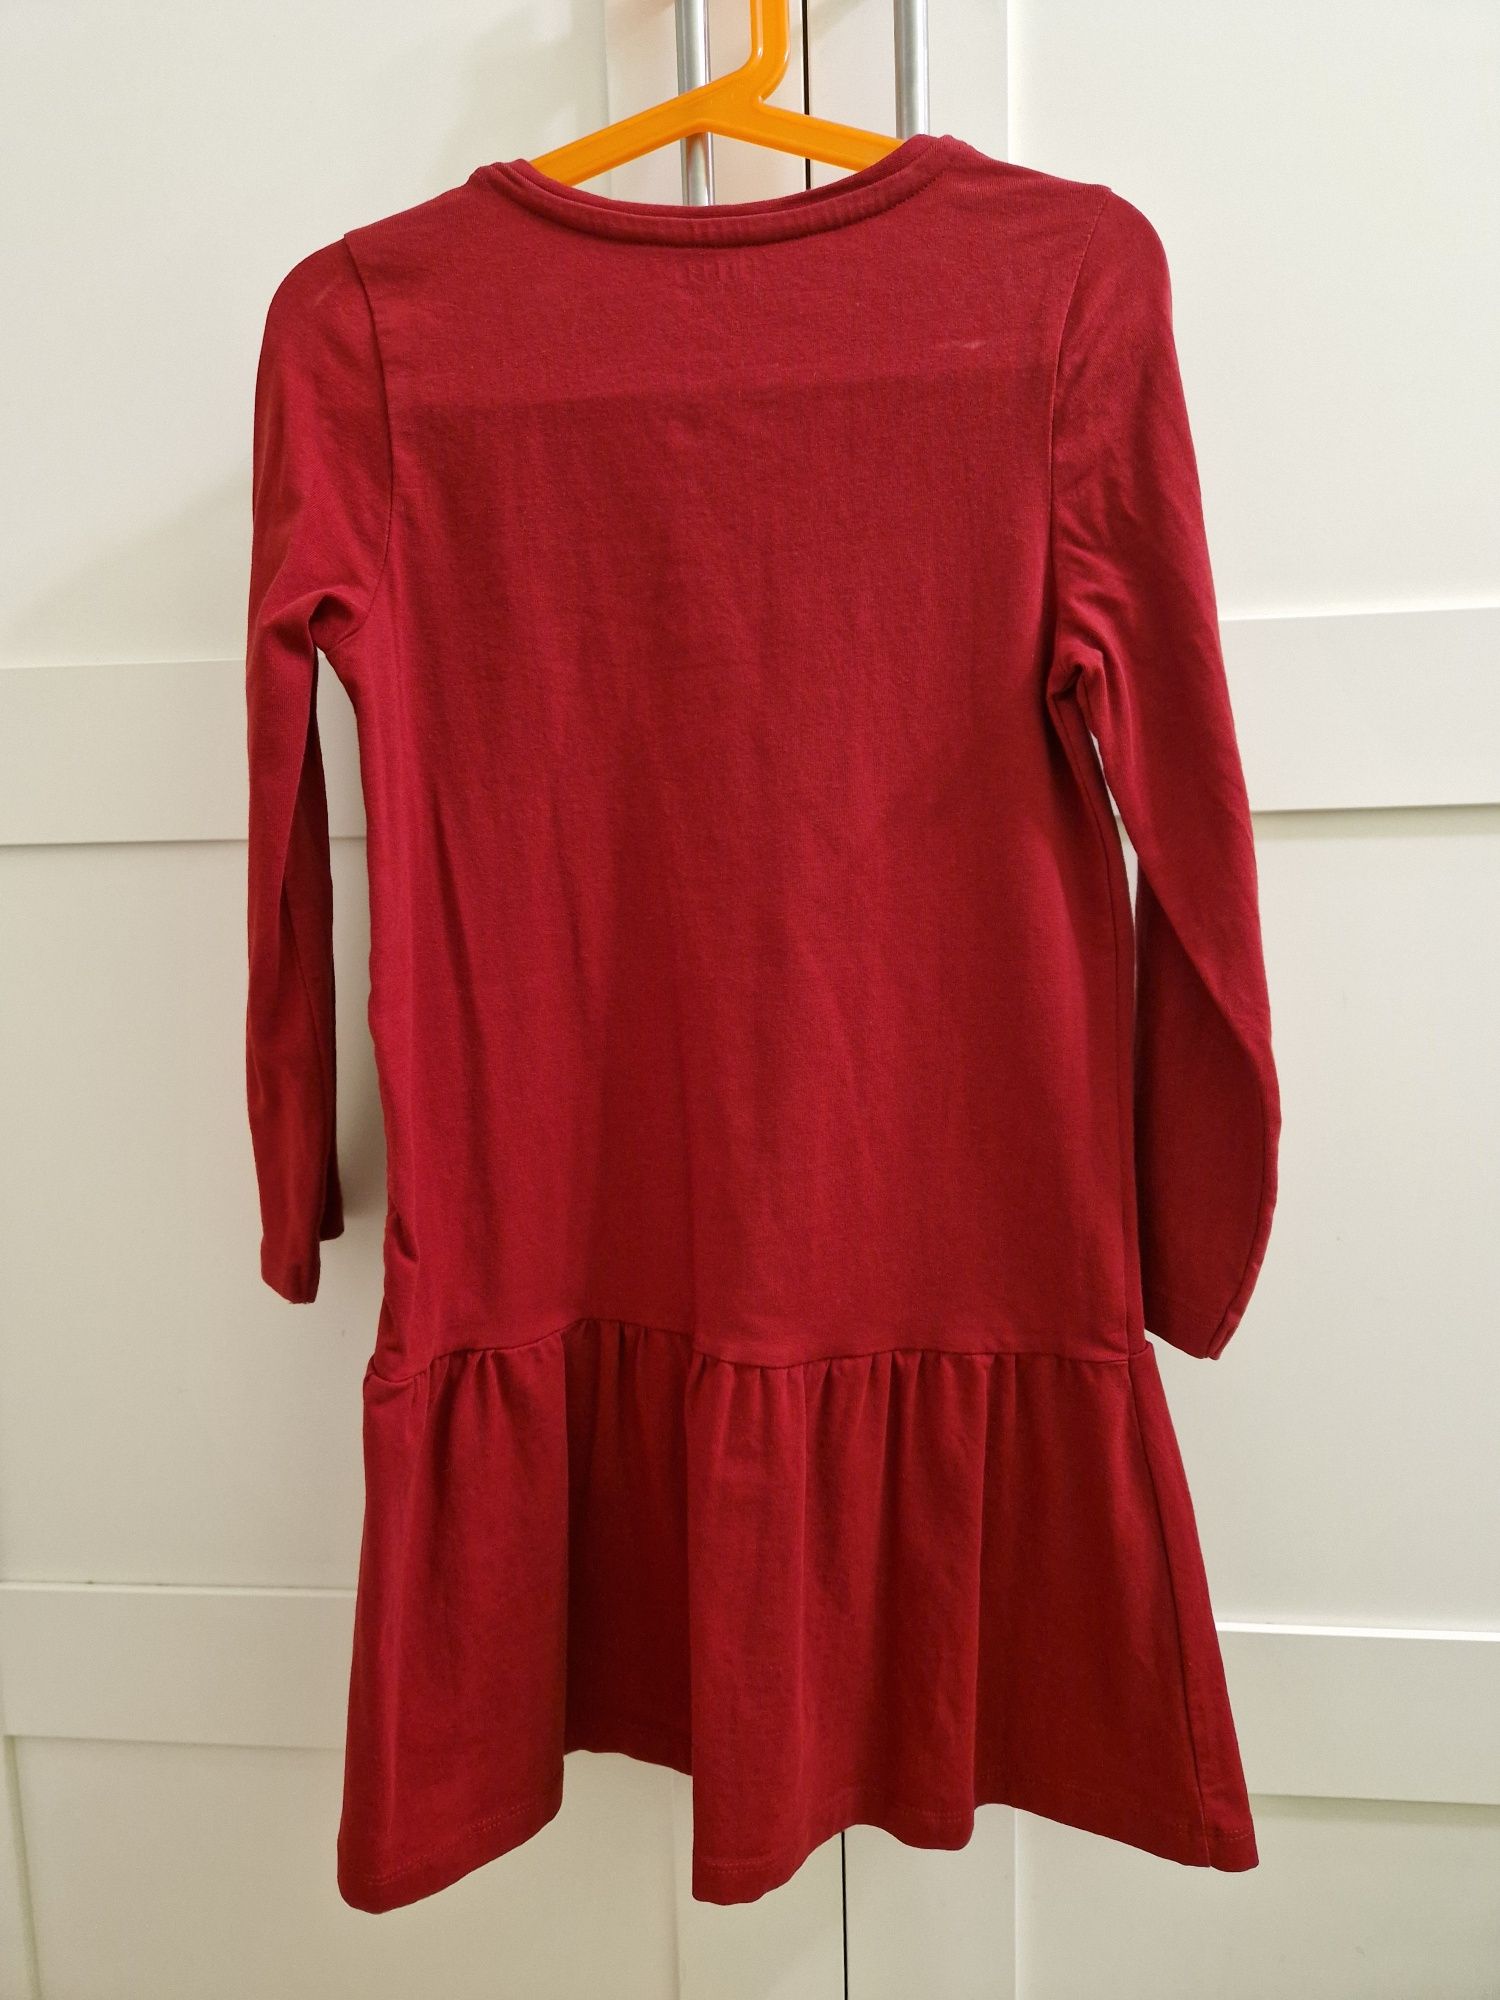 Czerwona sukienka z długimi rękawami Zalando 122/128